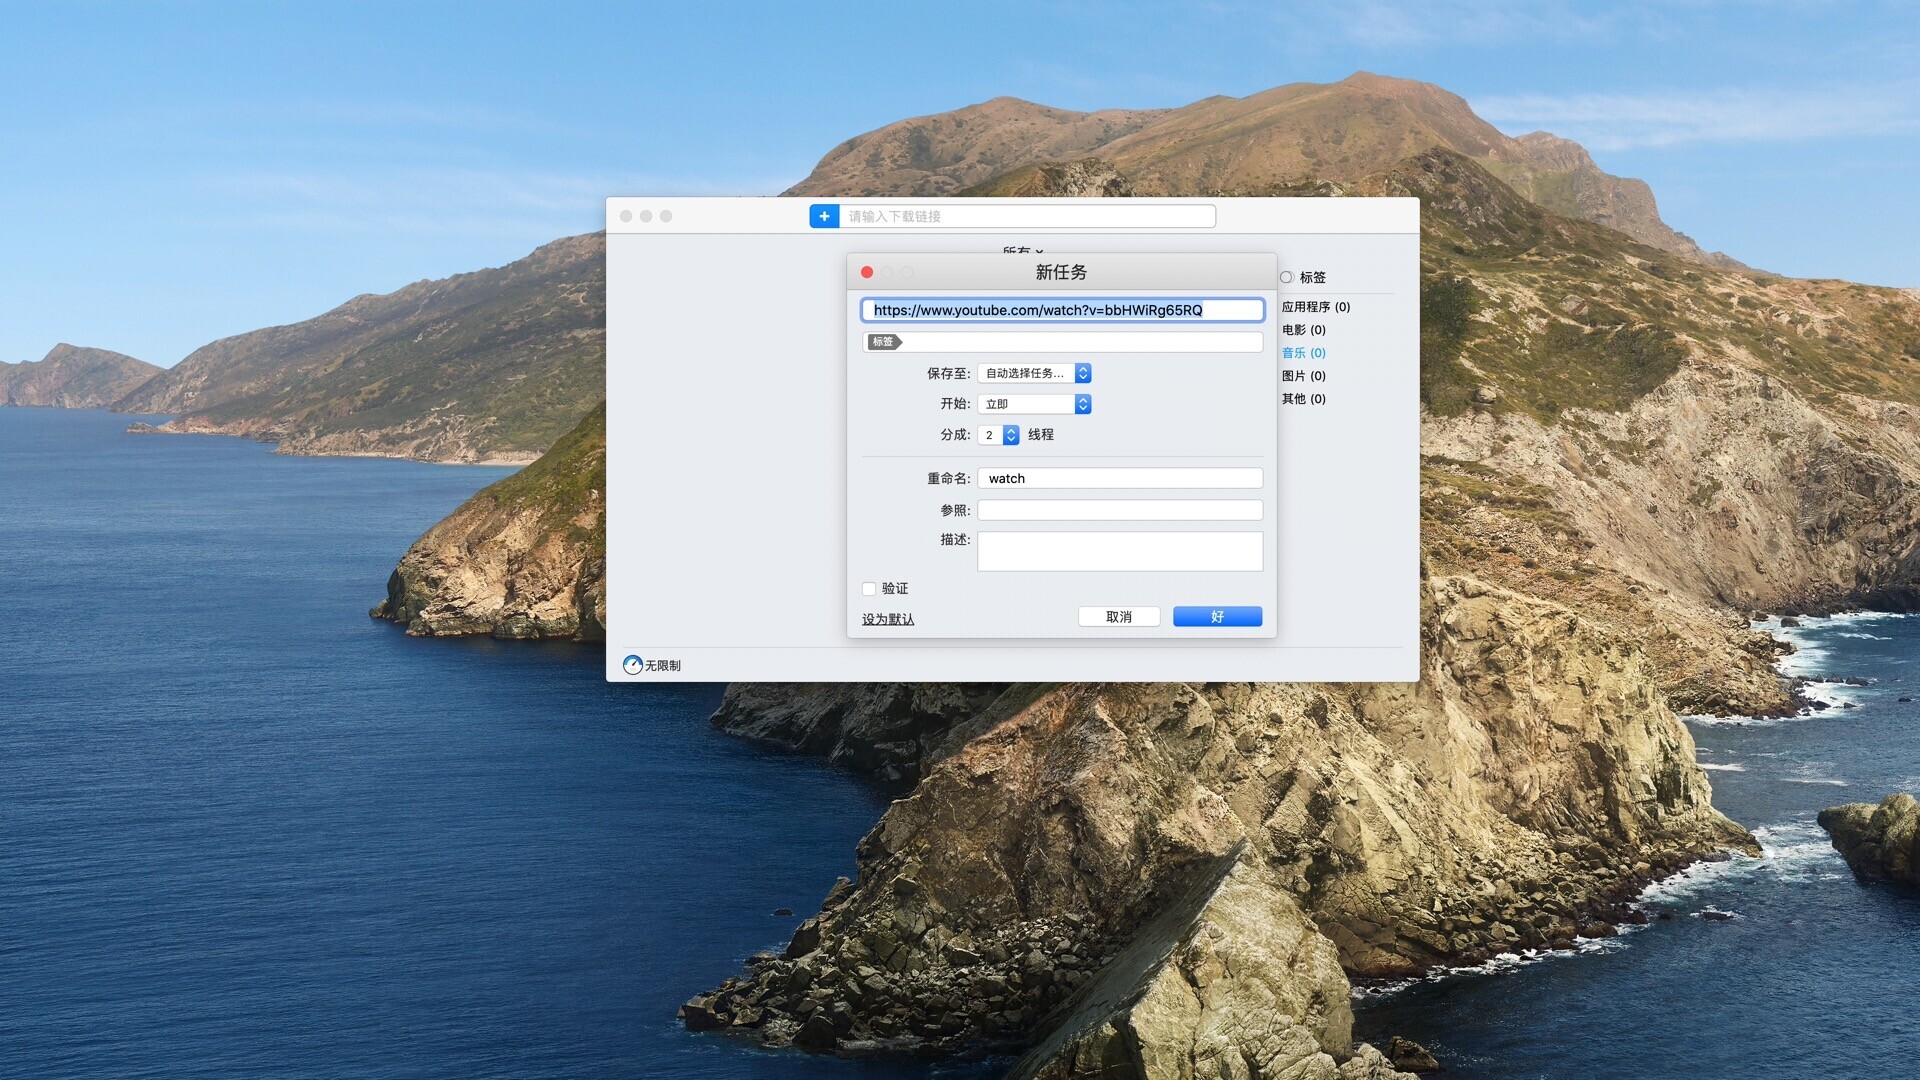 兼容M1 Mac下载工具Folx pro 5 v5.27中文激活版 安装包